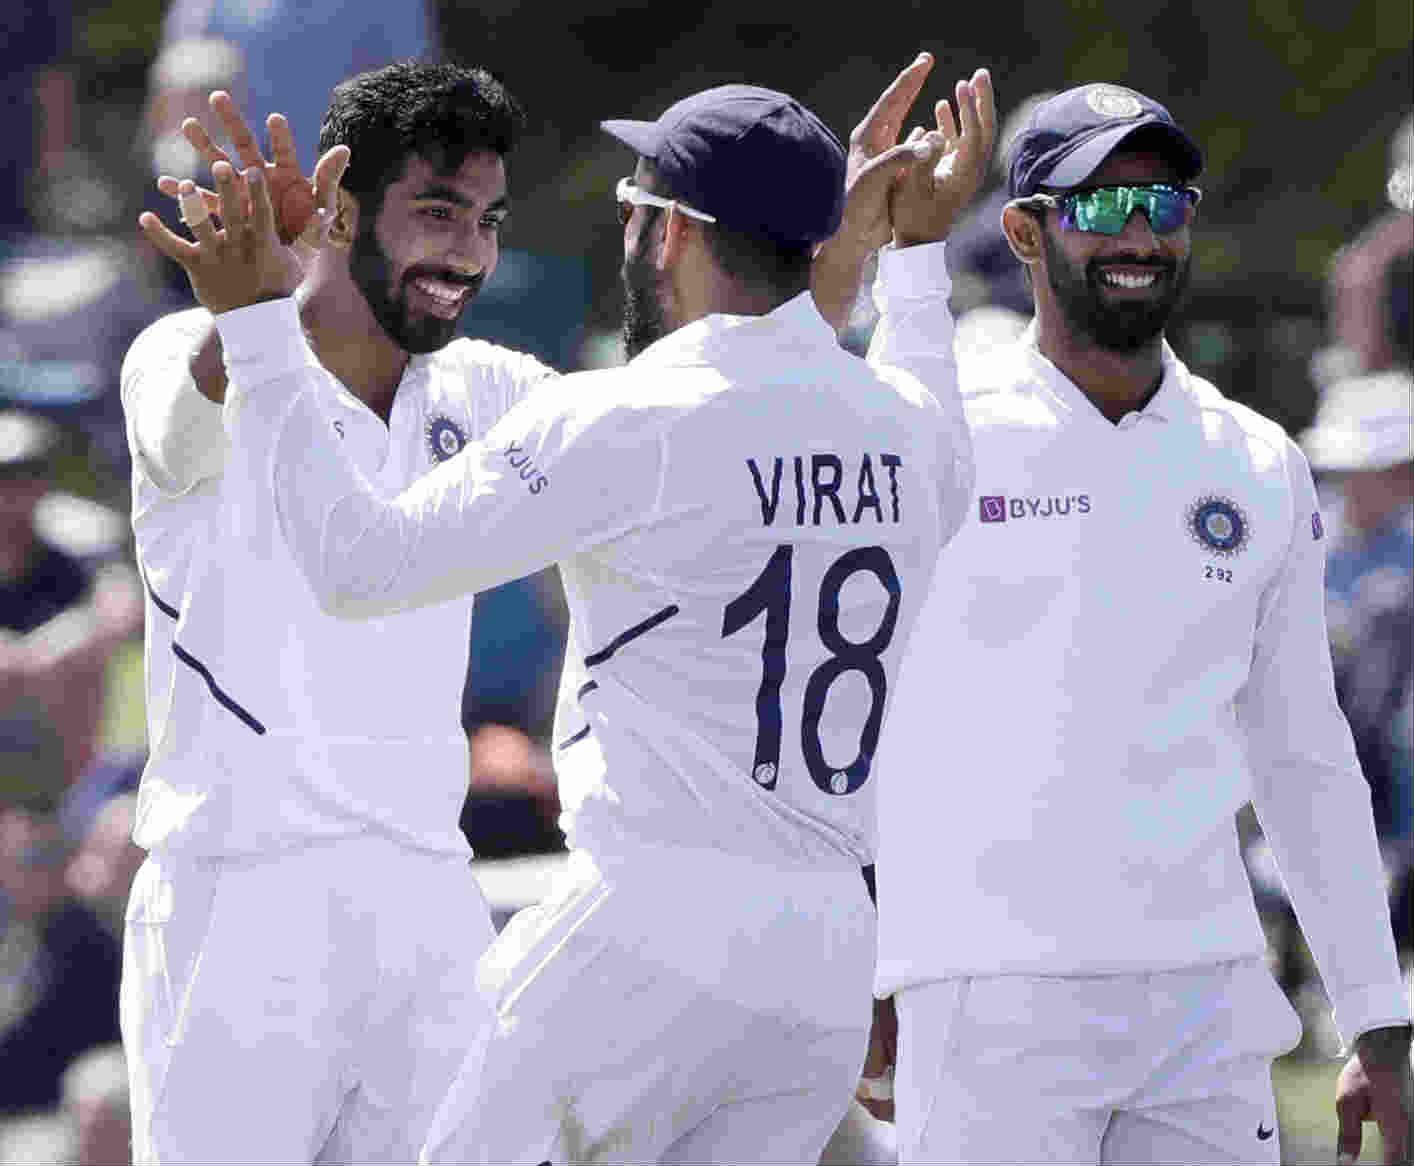 भारत बनाम ऑस्ट्रेलिया 2020-21 श्रृंखला: टेस्ट, ODIs, T20Is, स्थल, पिंक बॉल टेस्ट का विवरण